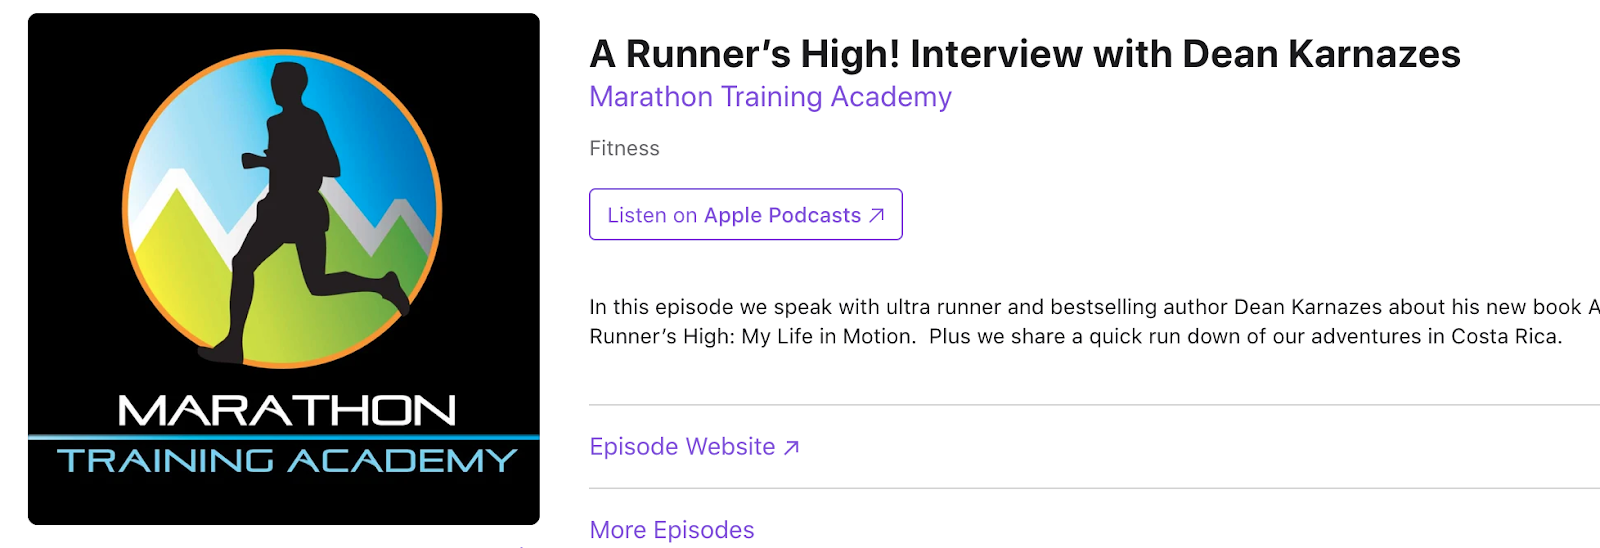 Podcast promotion for Marathon Training Academy